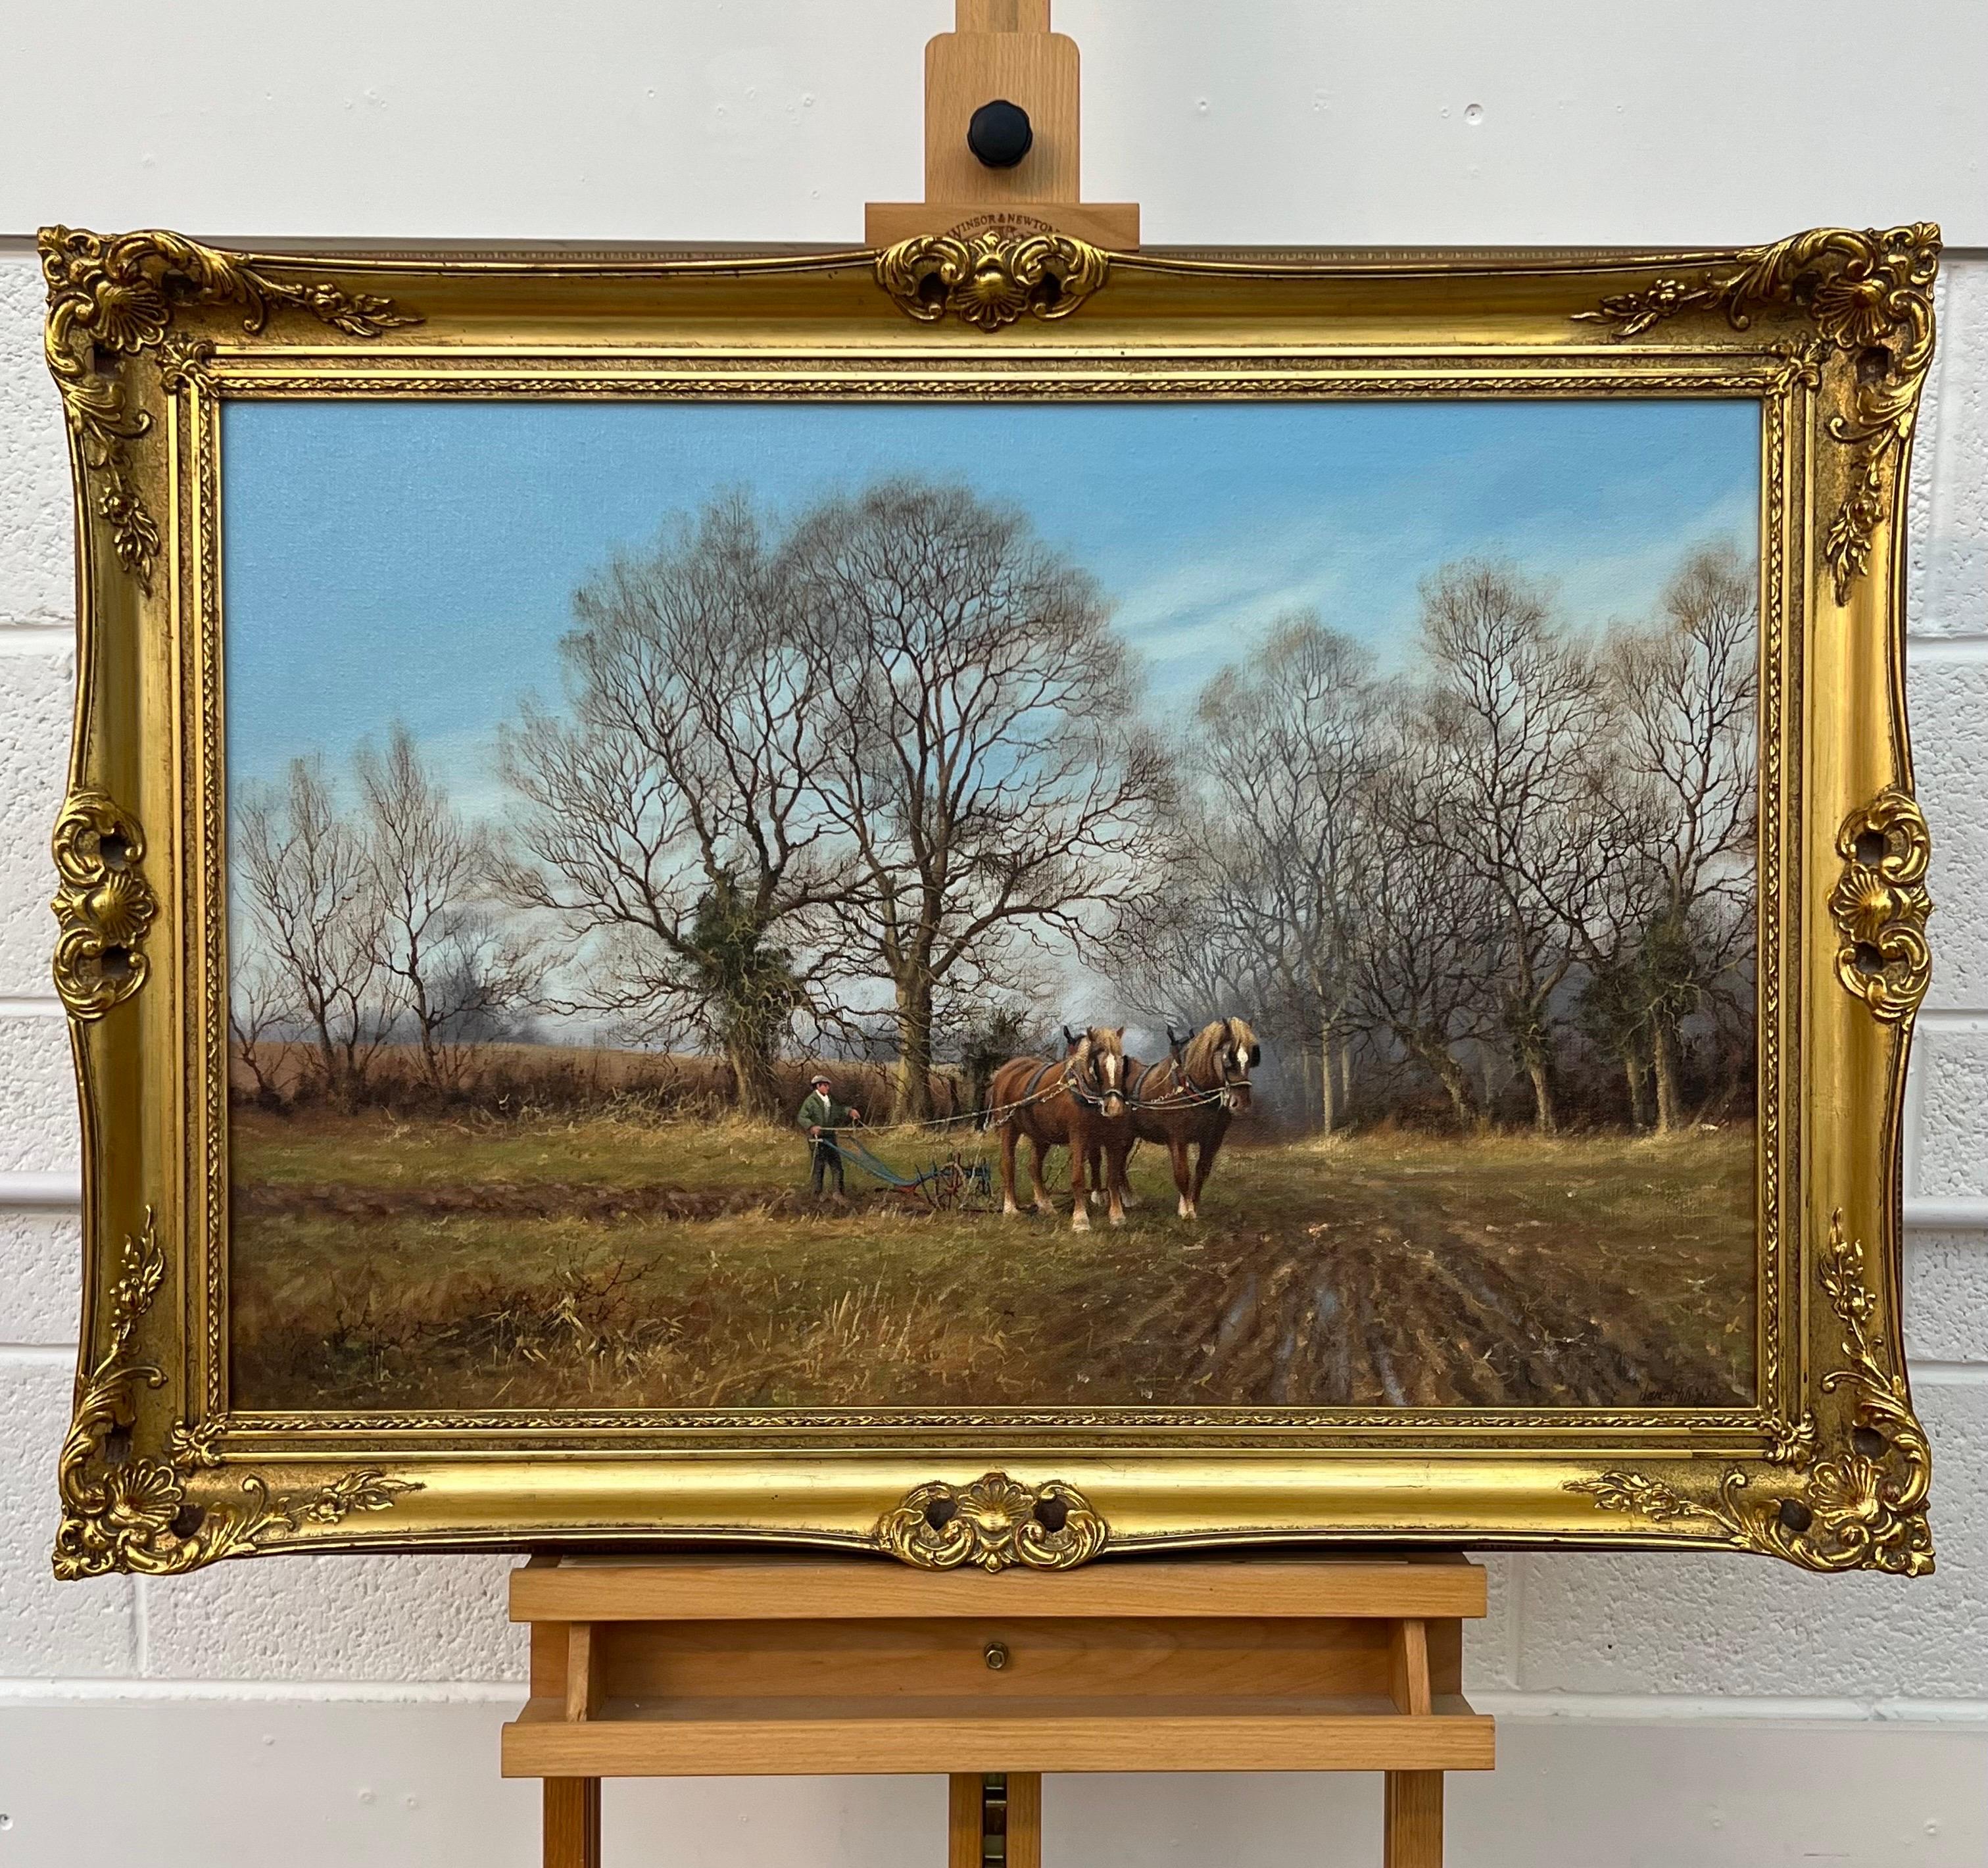 Traditionelles Ölgemälde der englischen Landschaft, umgeben von Bäumen, mit Pferden, die den Pflug ziehen, von dem britischen Vintage-Künstler James Wright 

Kunst misst 30 x 20 Zoll
Rahmen misst 36 x 26 Zoll 

James Wright wurde 1935 in